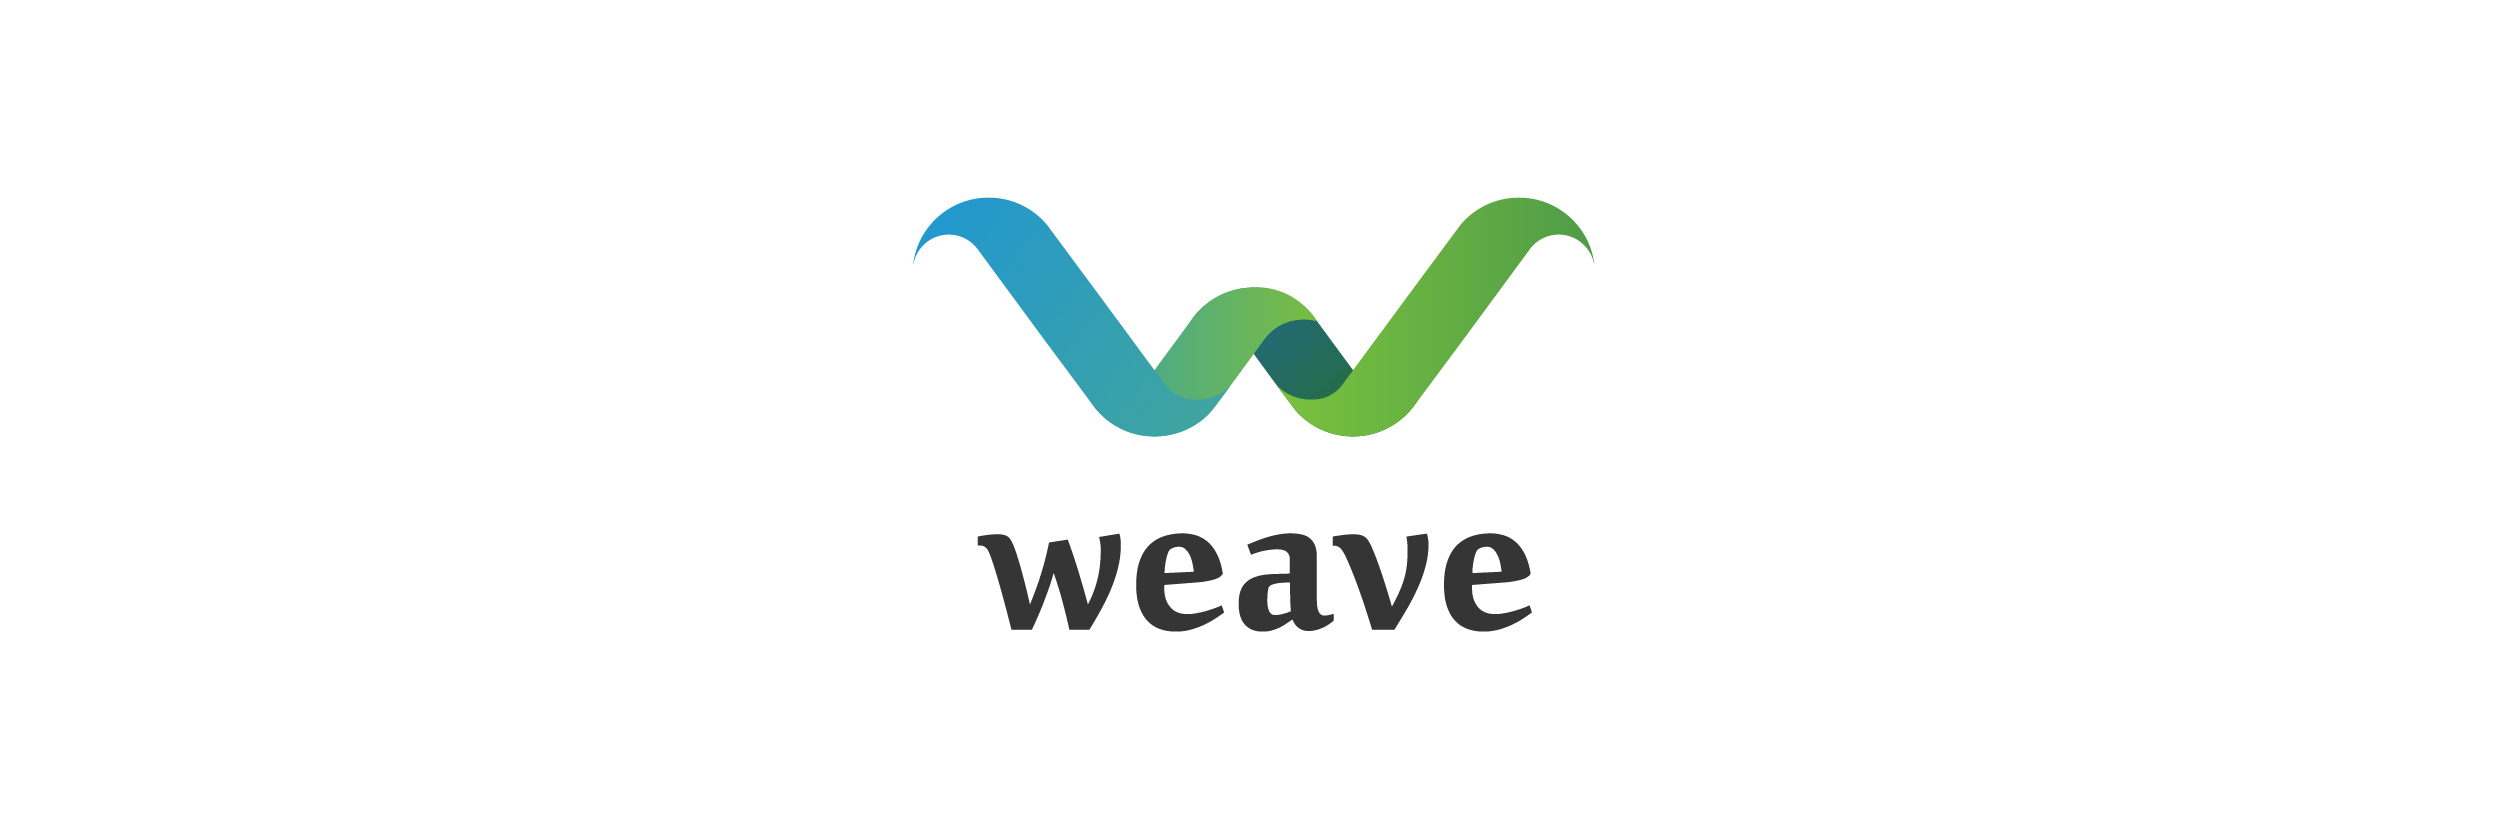 weave-logo.jpg